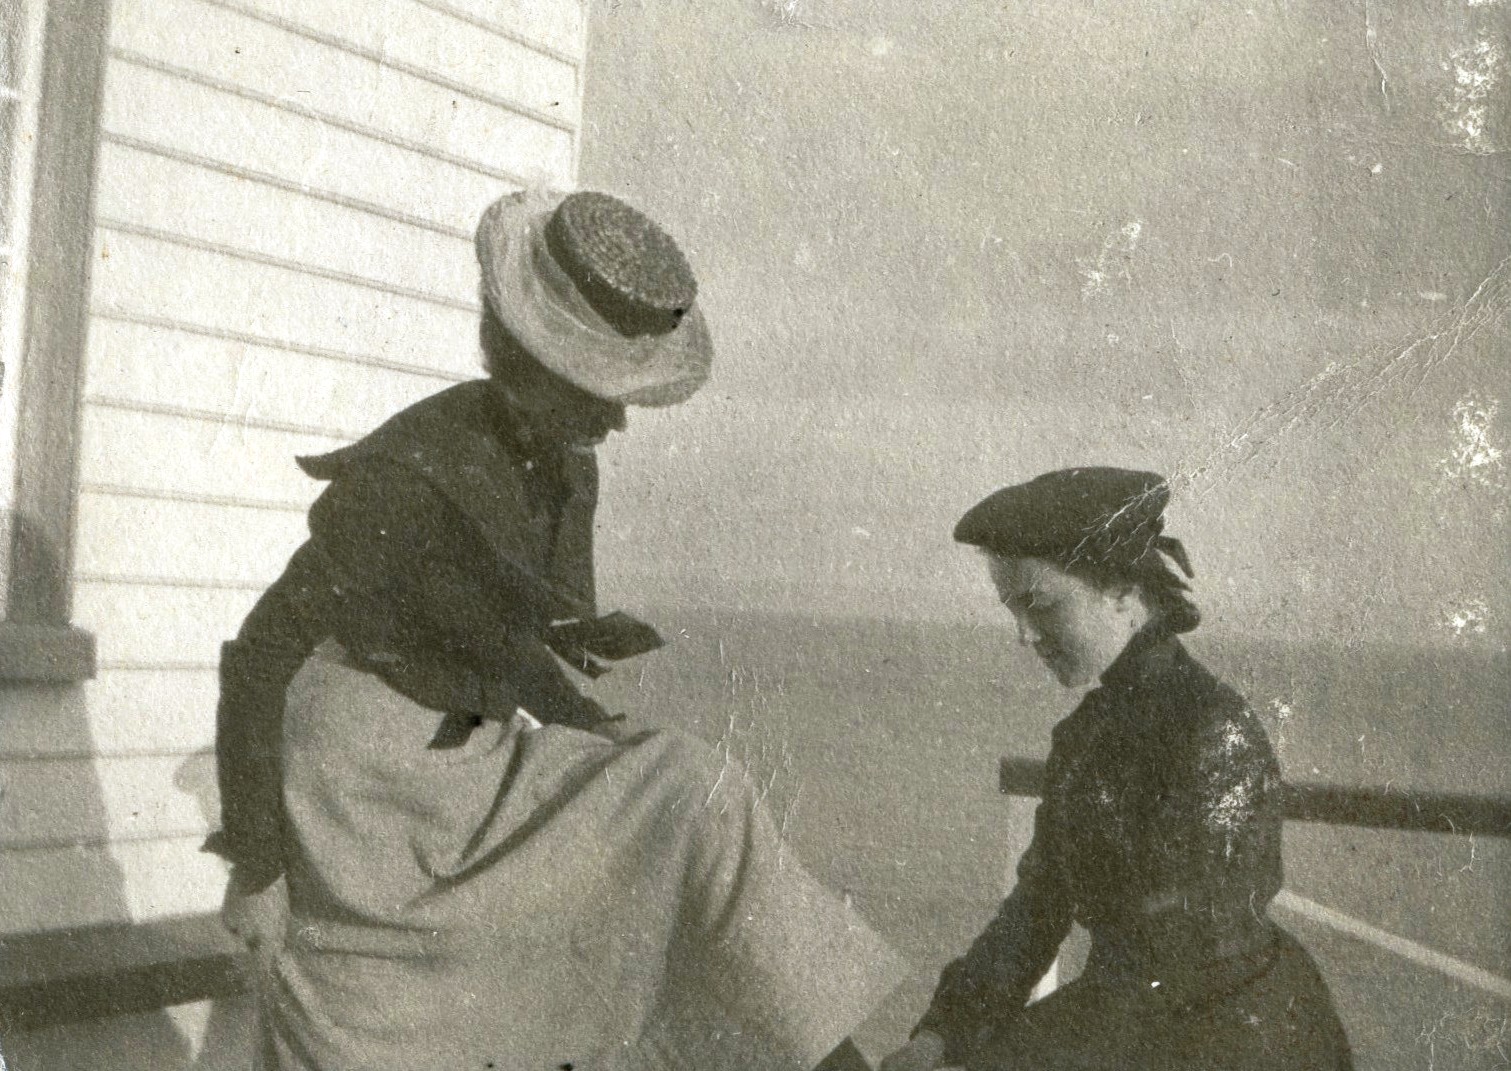 Une jeune femme lasse les chaussures d'une dame assise.